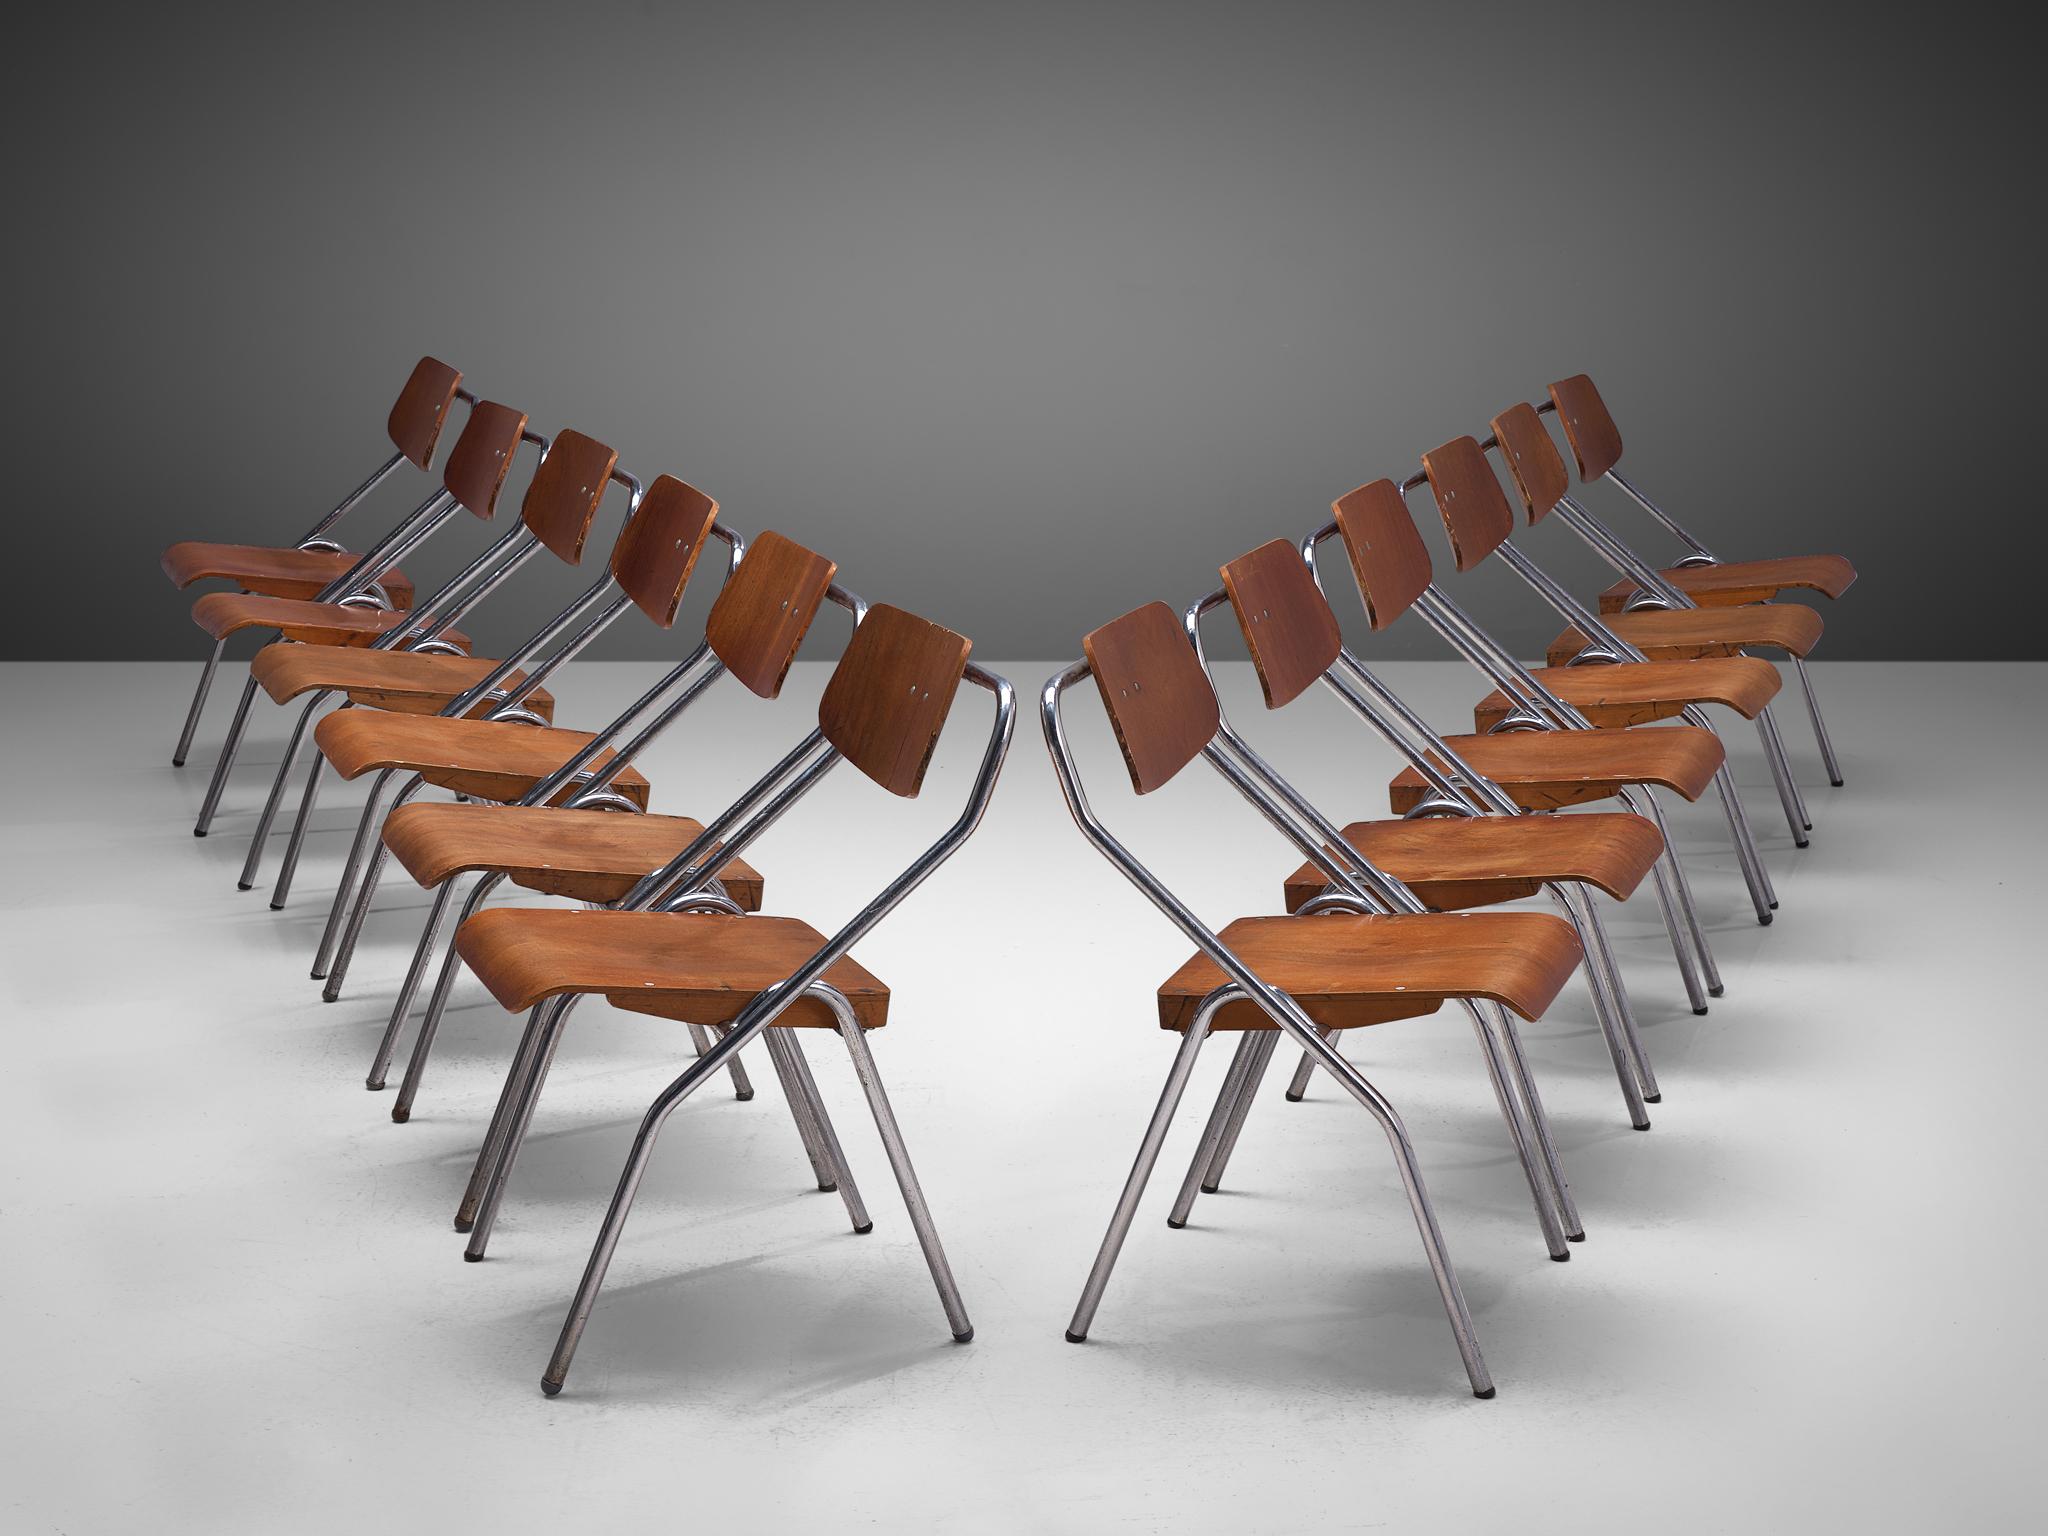 Ensemble de chaises pliantes, métal chromé et contreplaqué, Pays-Bas, circa. 1930

Cet ensemble de chaises d'école hollandaise du milieu du siècle serait un excellent choix pour votre projet si vous recherchez des chaises faciles à ranger. Les